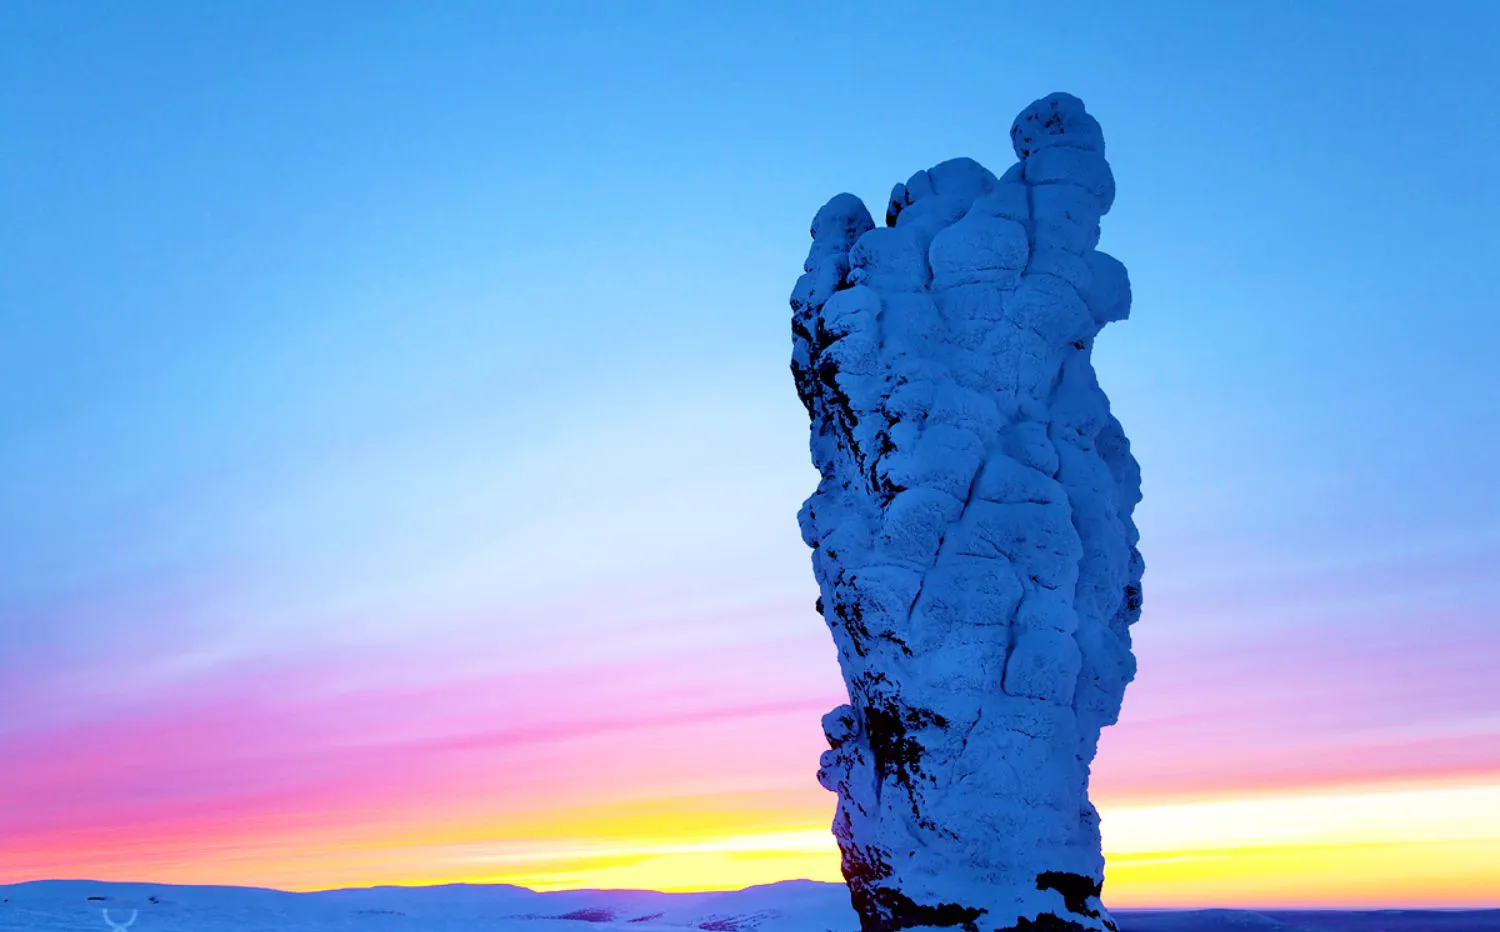 Ngắm nhìn tuyệt tác thiên nhiên - người khổng lồ đá bí ẩn của nước Nga